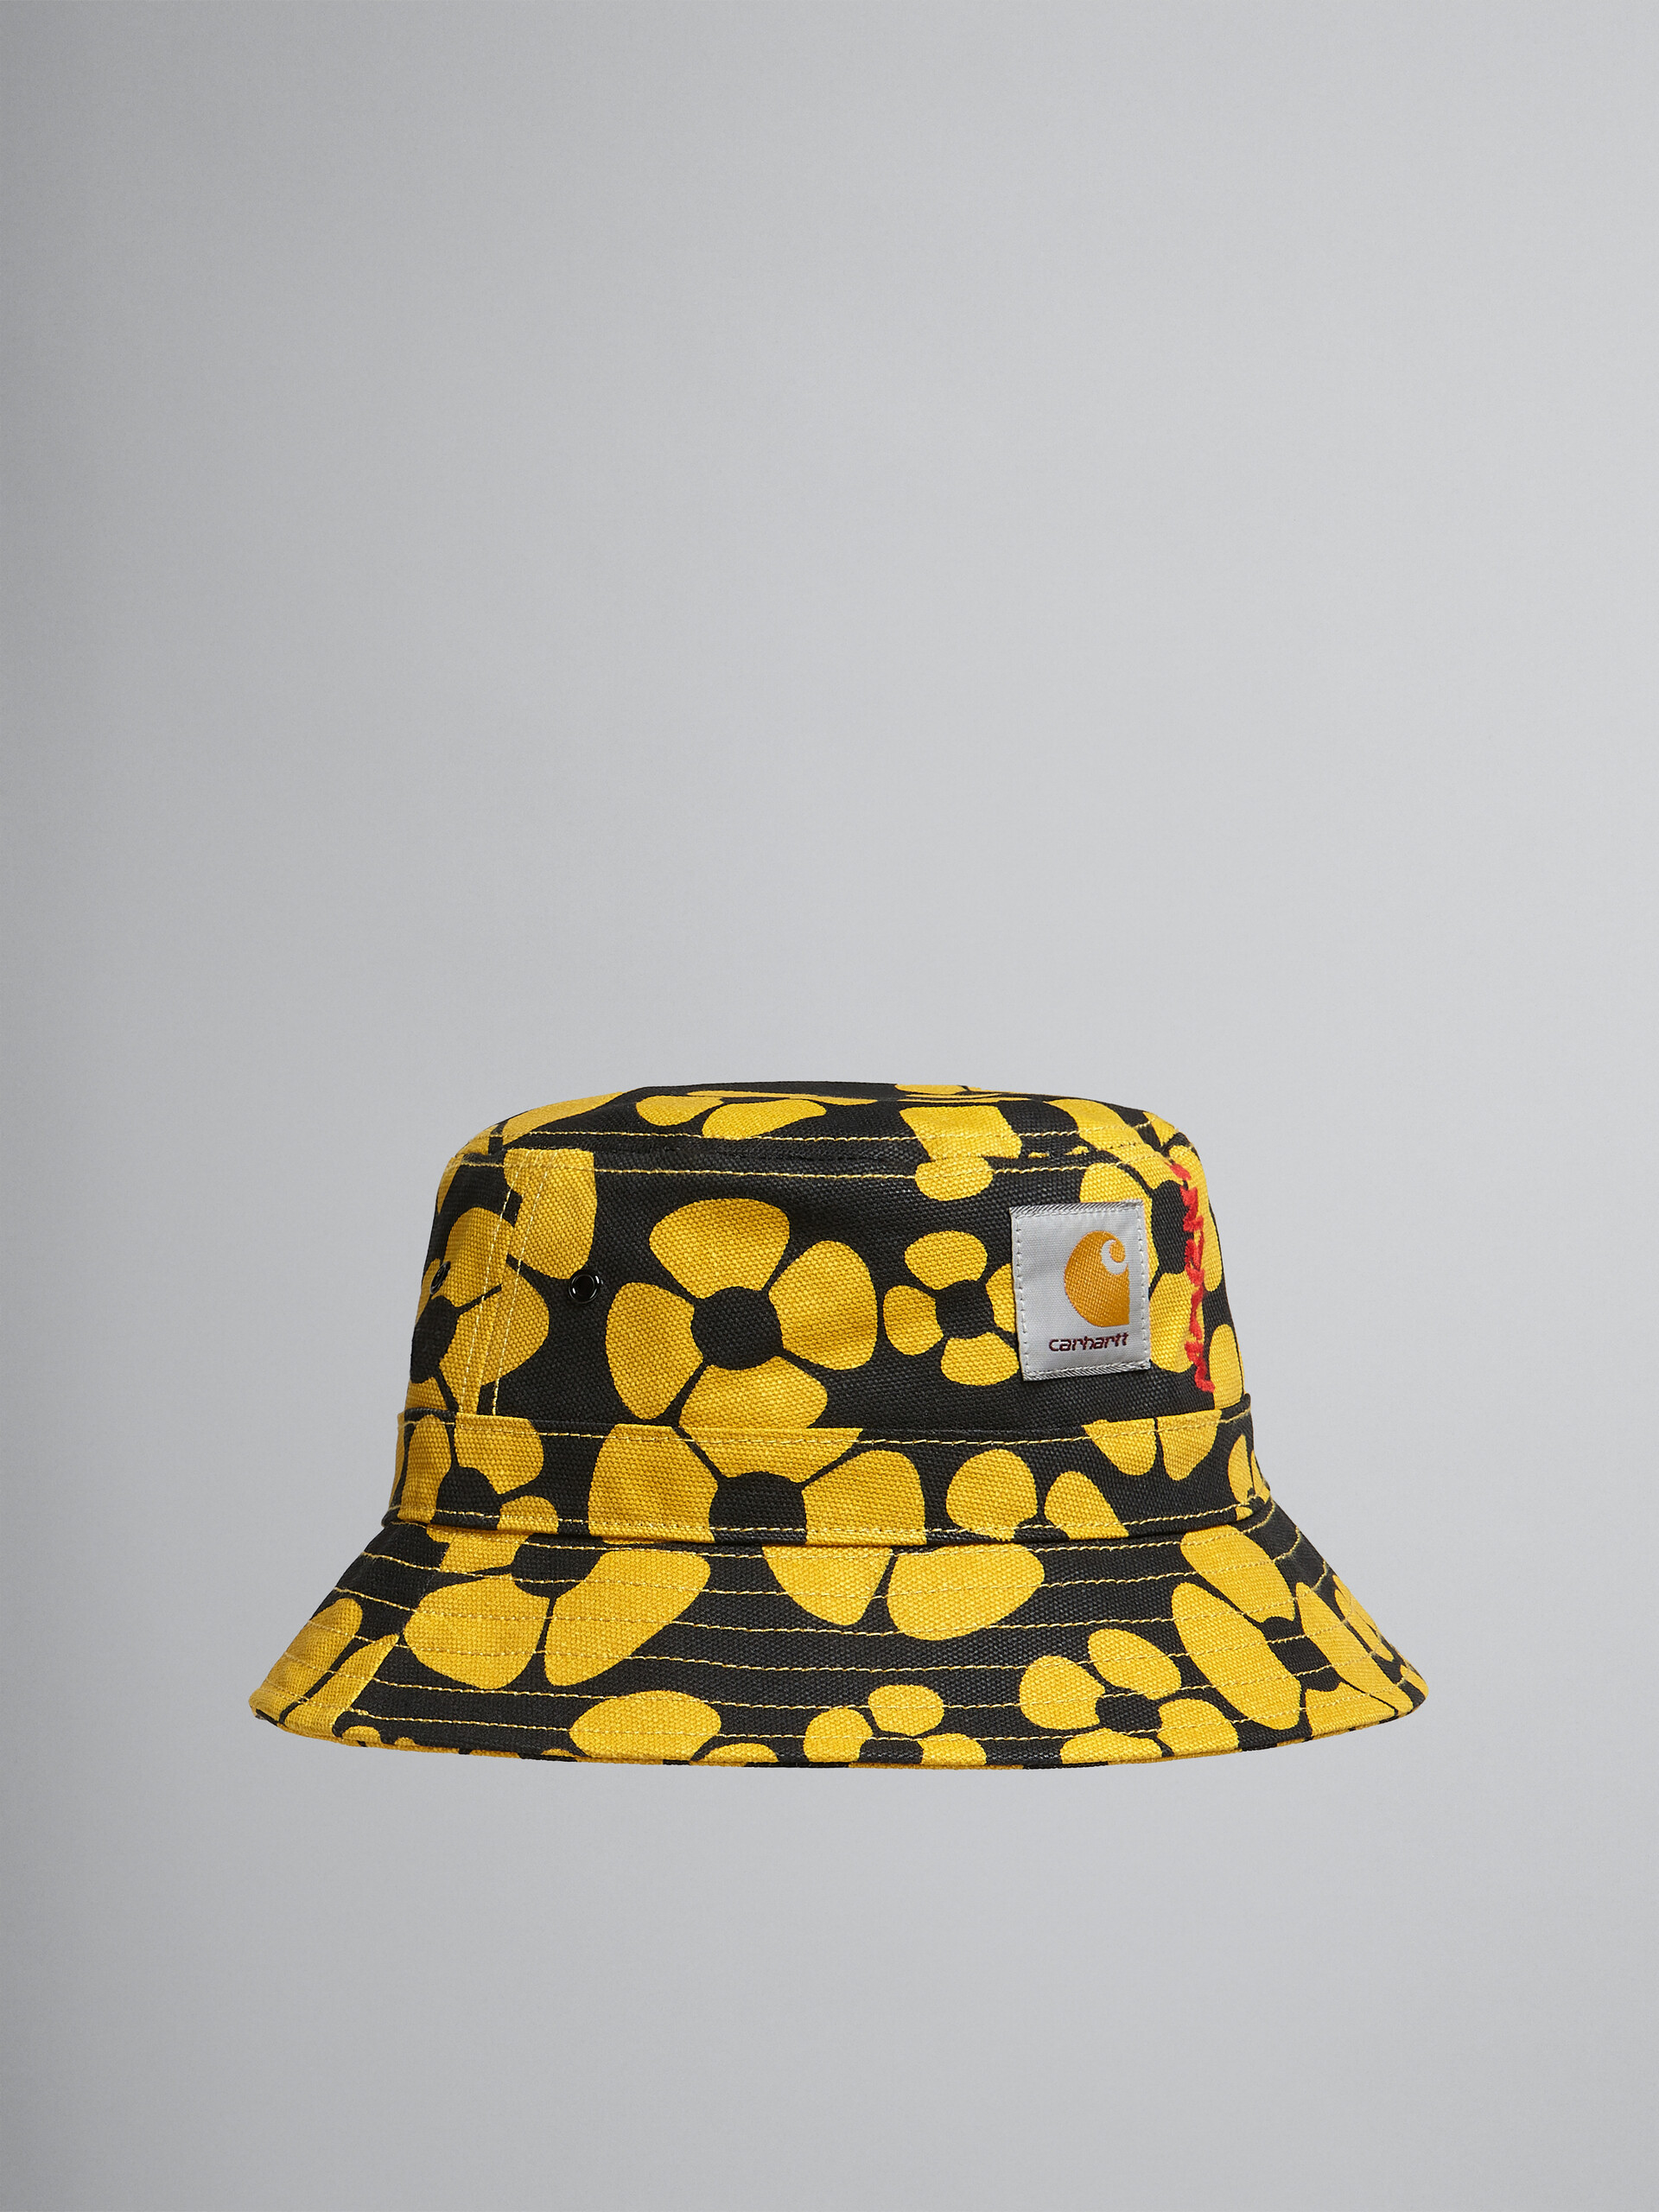 MARNI x CARHARTT WIP - yellow bucket hat - Hats - Image 1